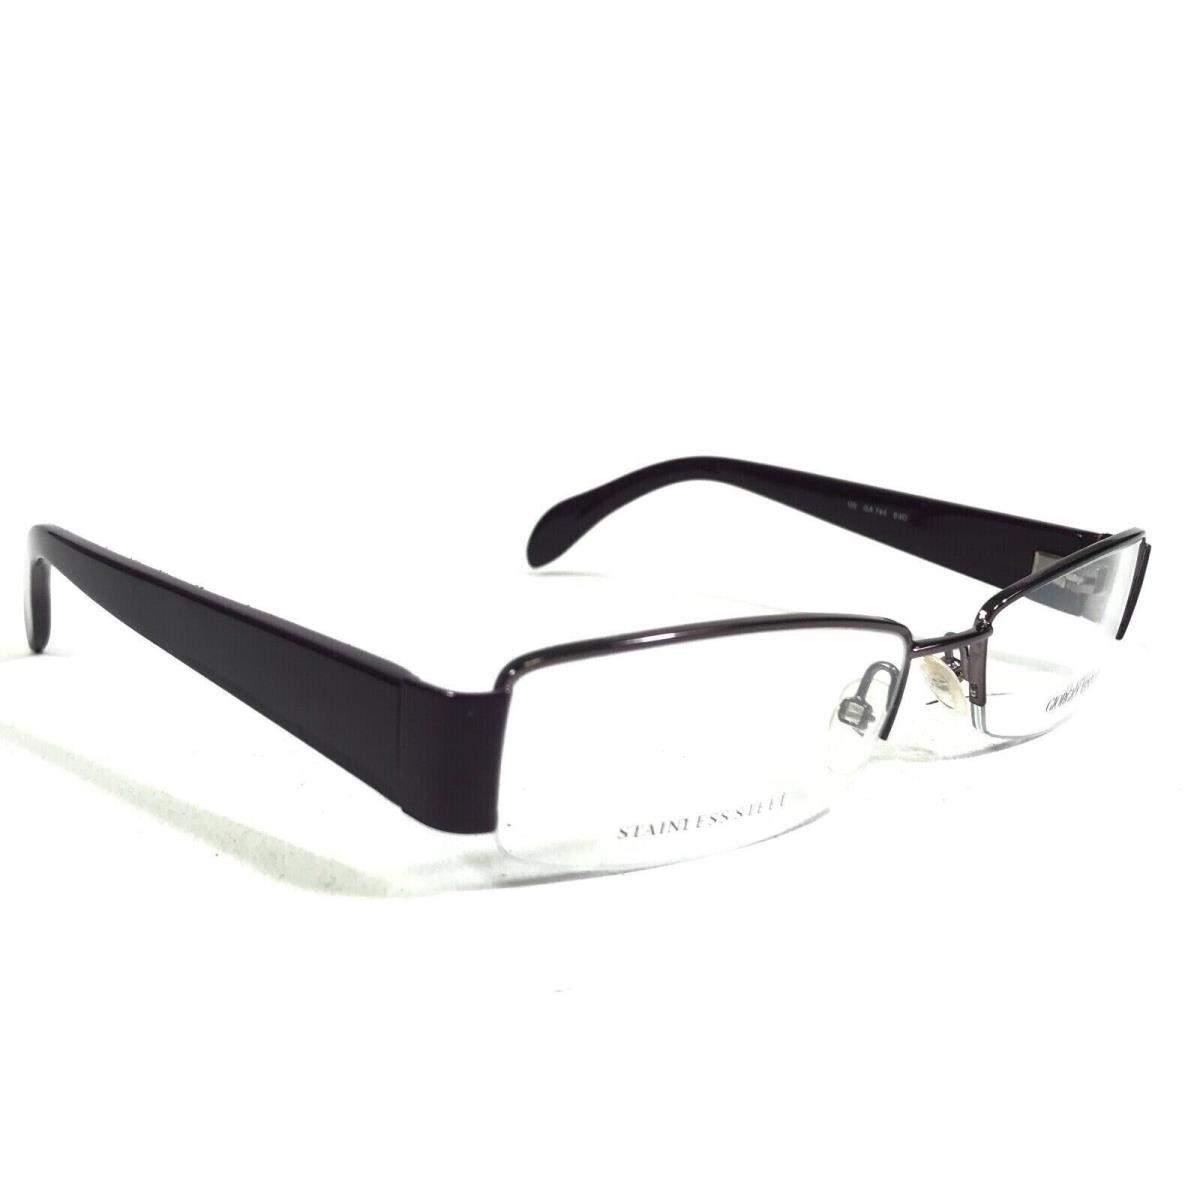 Giorgio Armani GA744 E40 Purple Eyeglasses Optical Semi-rim Frame 51-17-135 RX